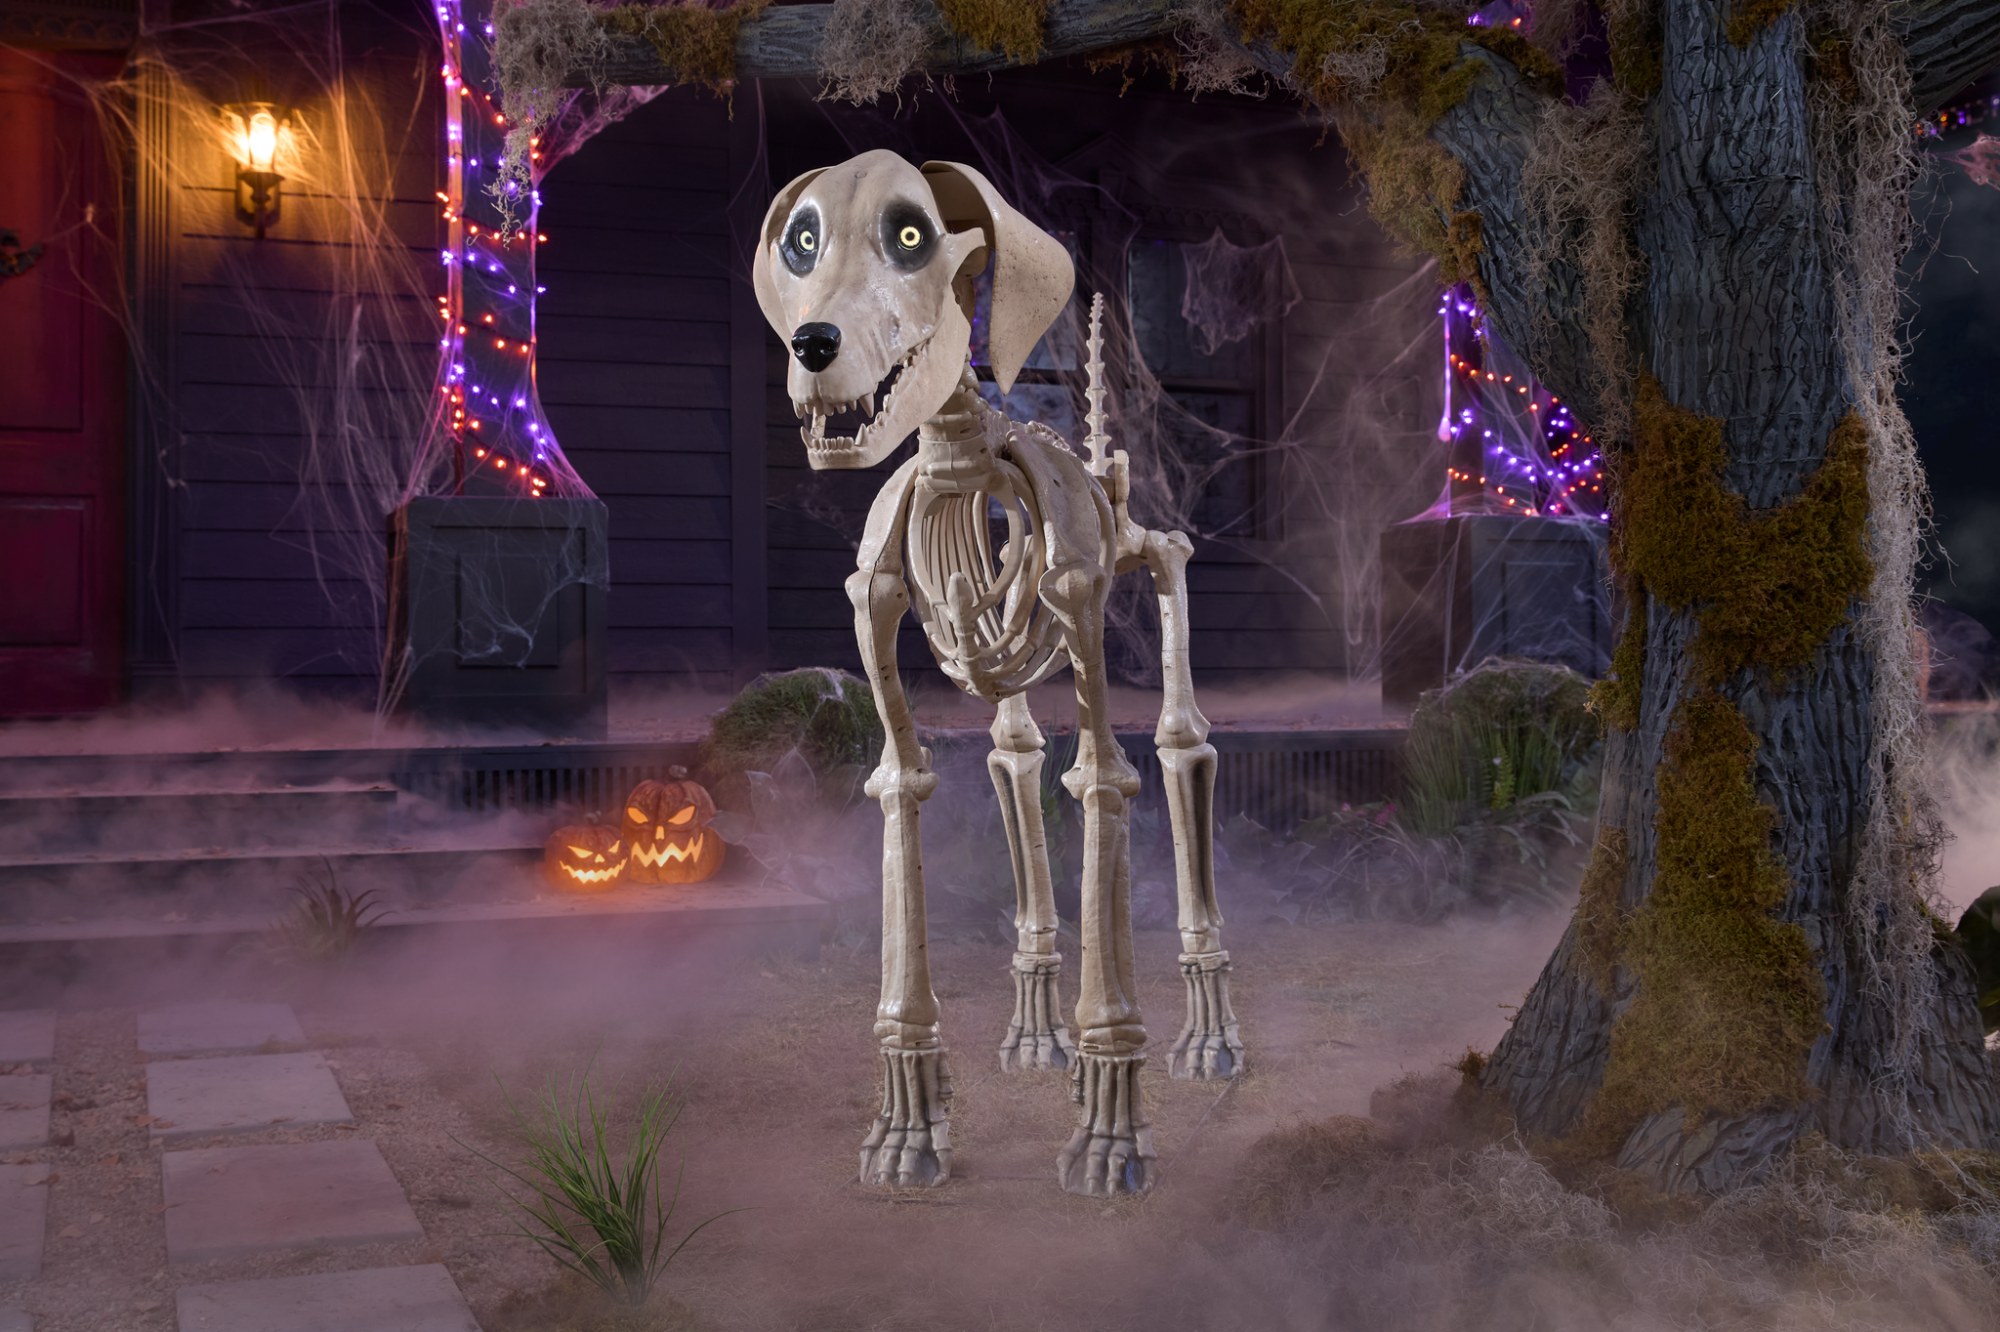 le 5 pieds.  Chien squelette de Home Depot devant une maison effrayante et enfumée